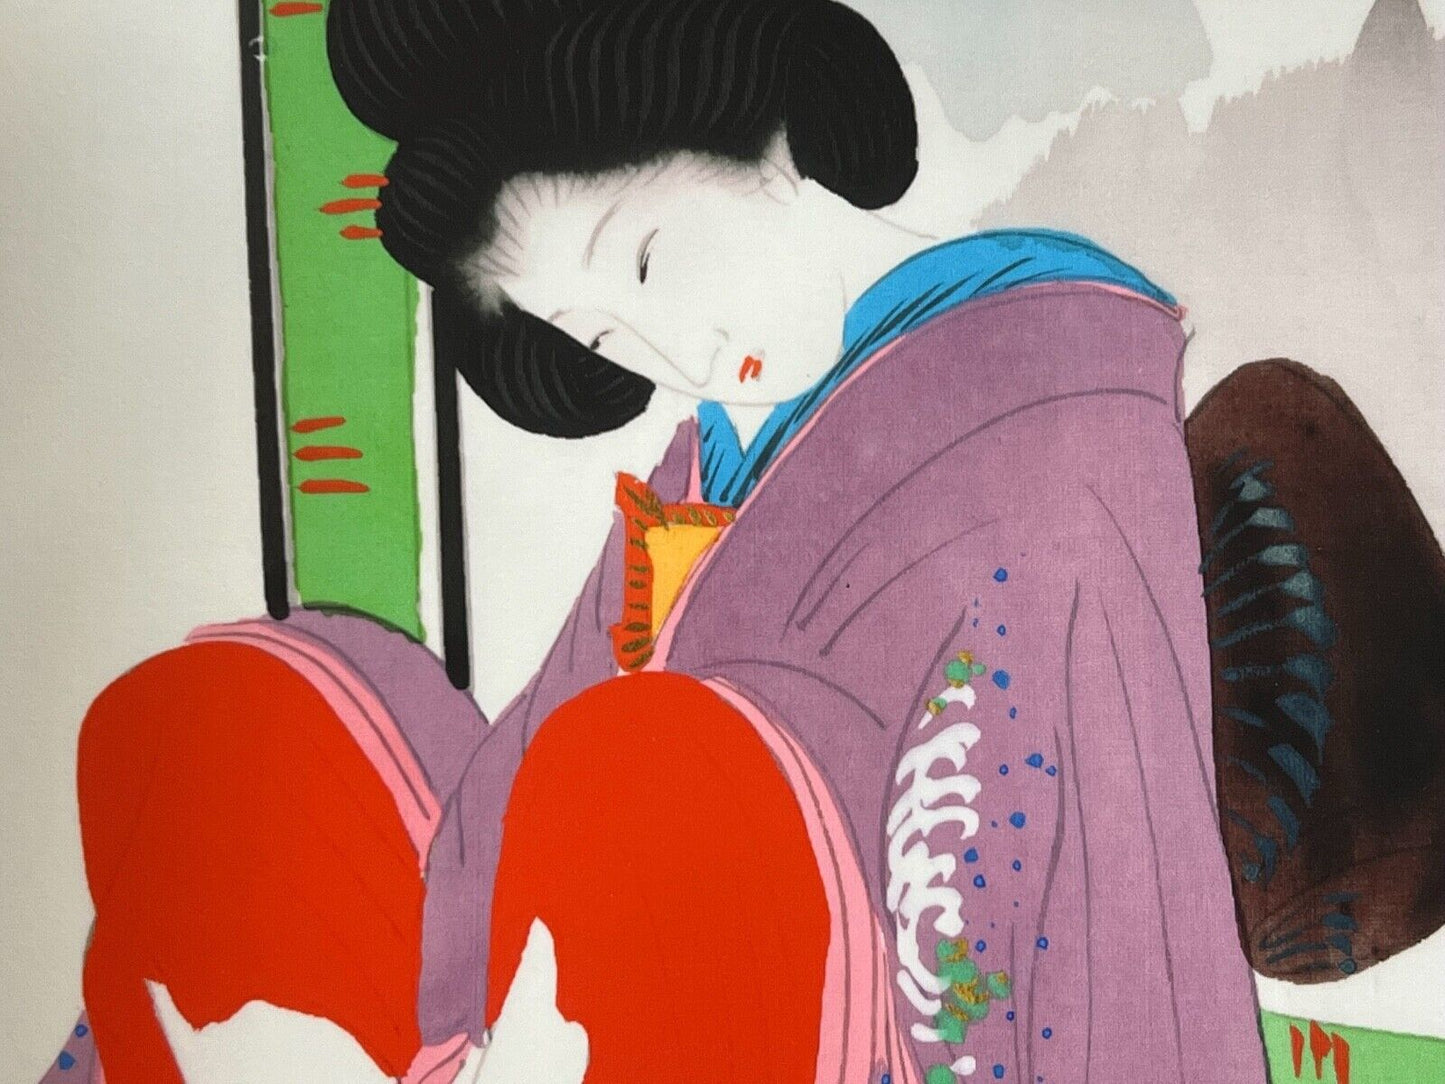 Shunga Japanese Erotic Art Giclee Print Hand Painting On Silk 10.5"X7.75" #22